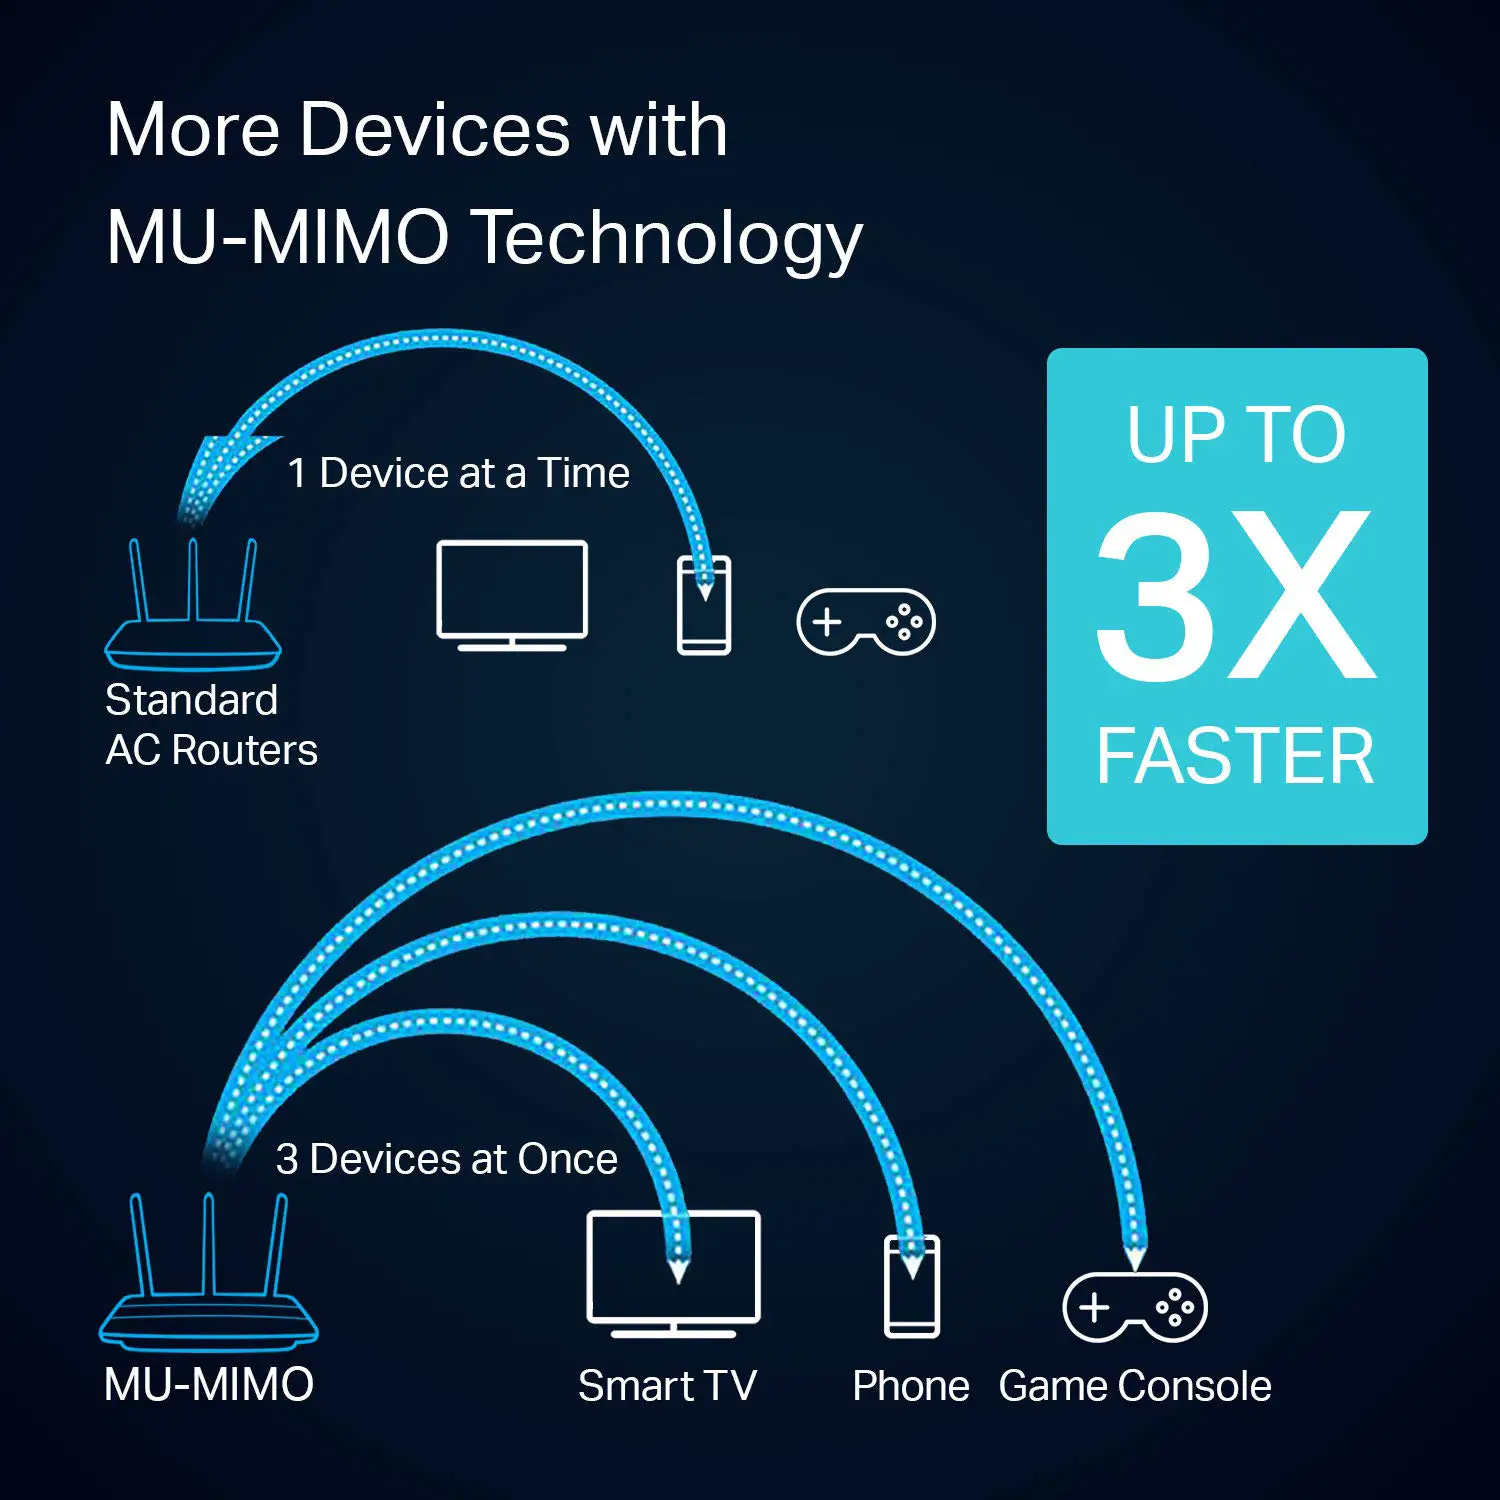 MU-MIMO ermöglicht es, mehrere Signale gleichzeitig zu senden